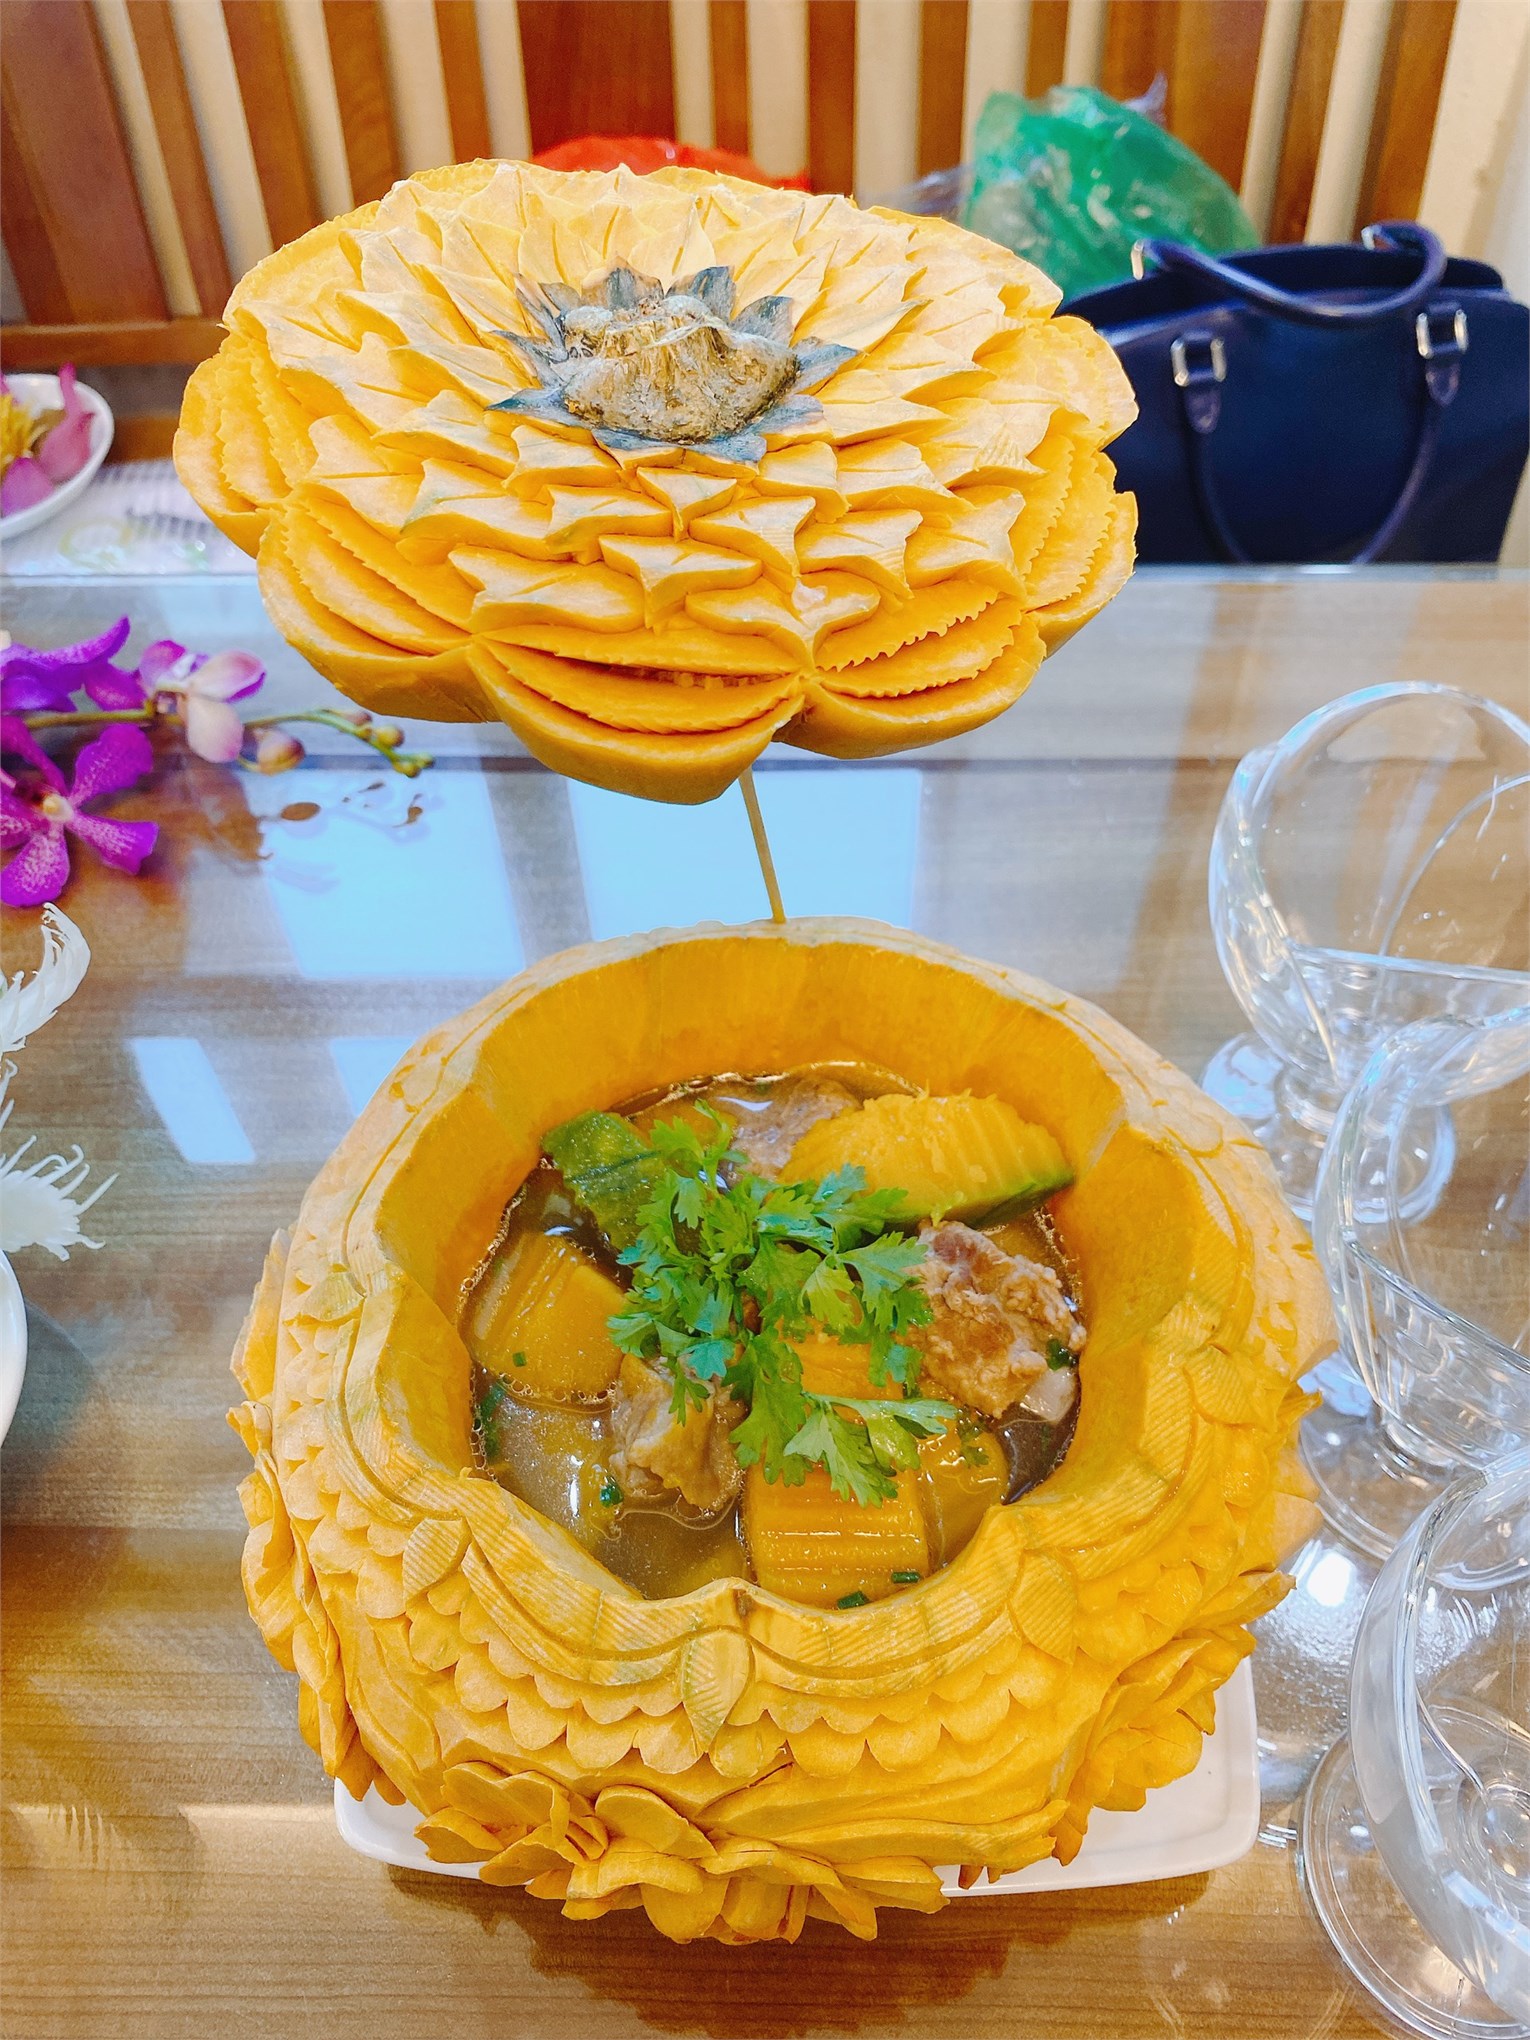 Hội thi nấu ăn cắm hoa kỉ niệm 90 năm ngày thành lập Hội Liên hiệp Phụ nữ Việt Nam